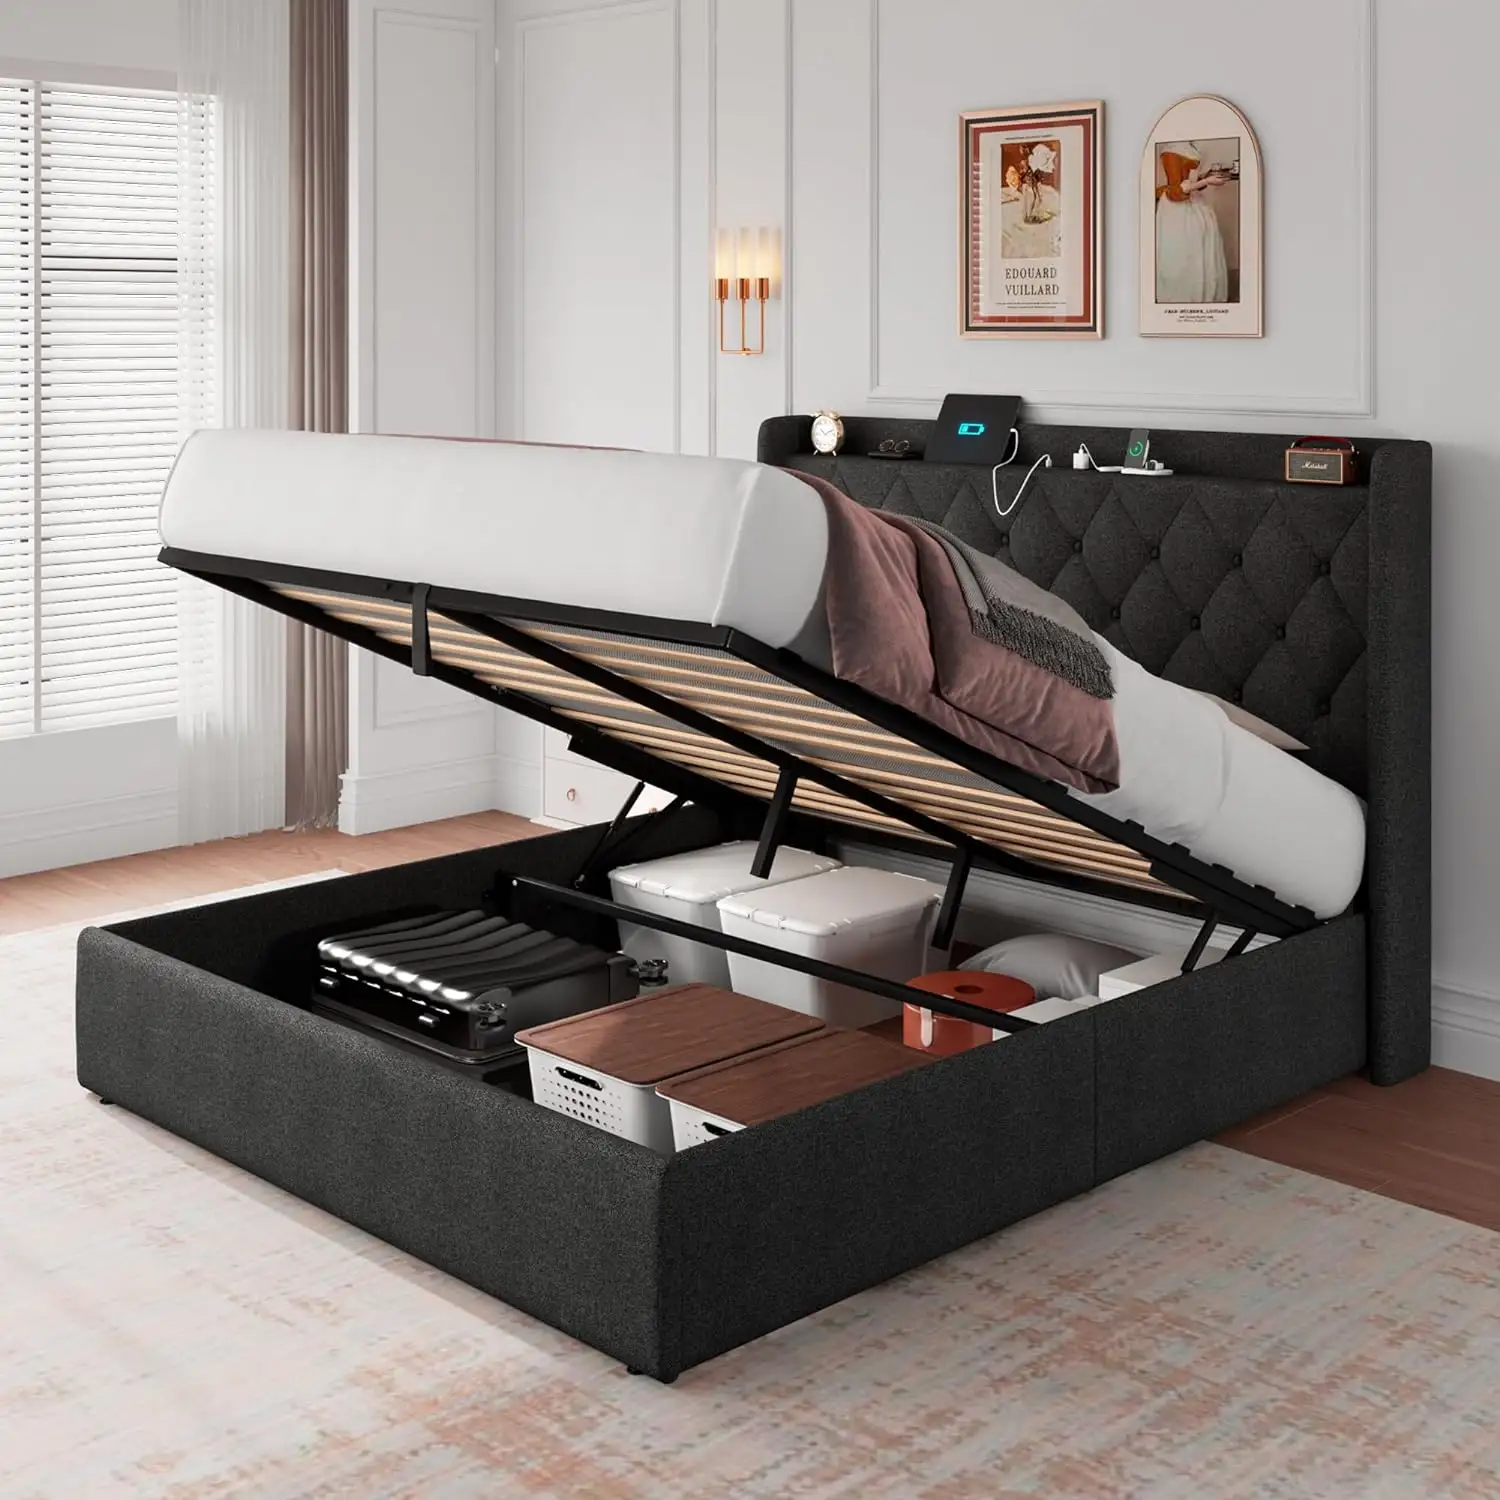 DI DAT Moderne Design Style King size Cadre de lit en bois pour chambre Port USB et prise, rangement sous le lit, éclairage led RVB